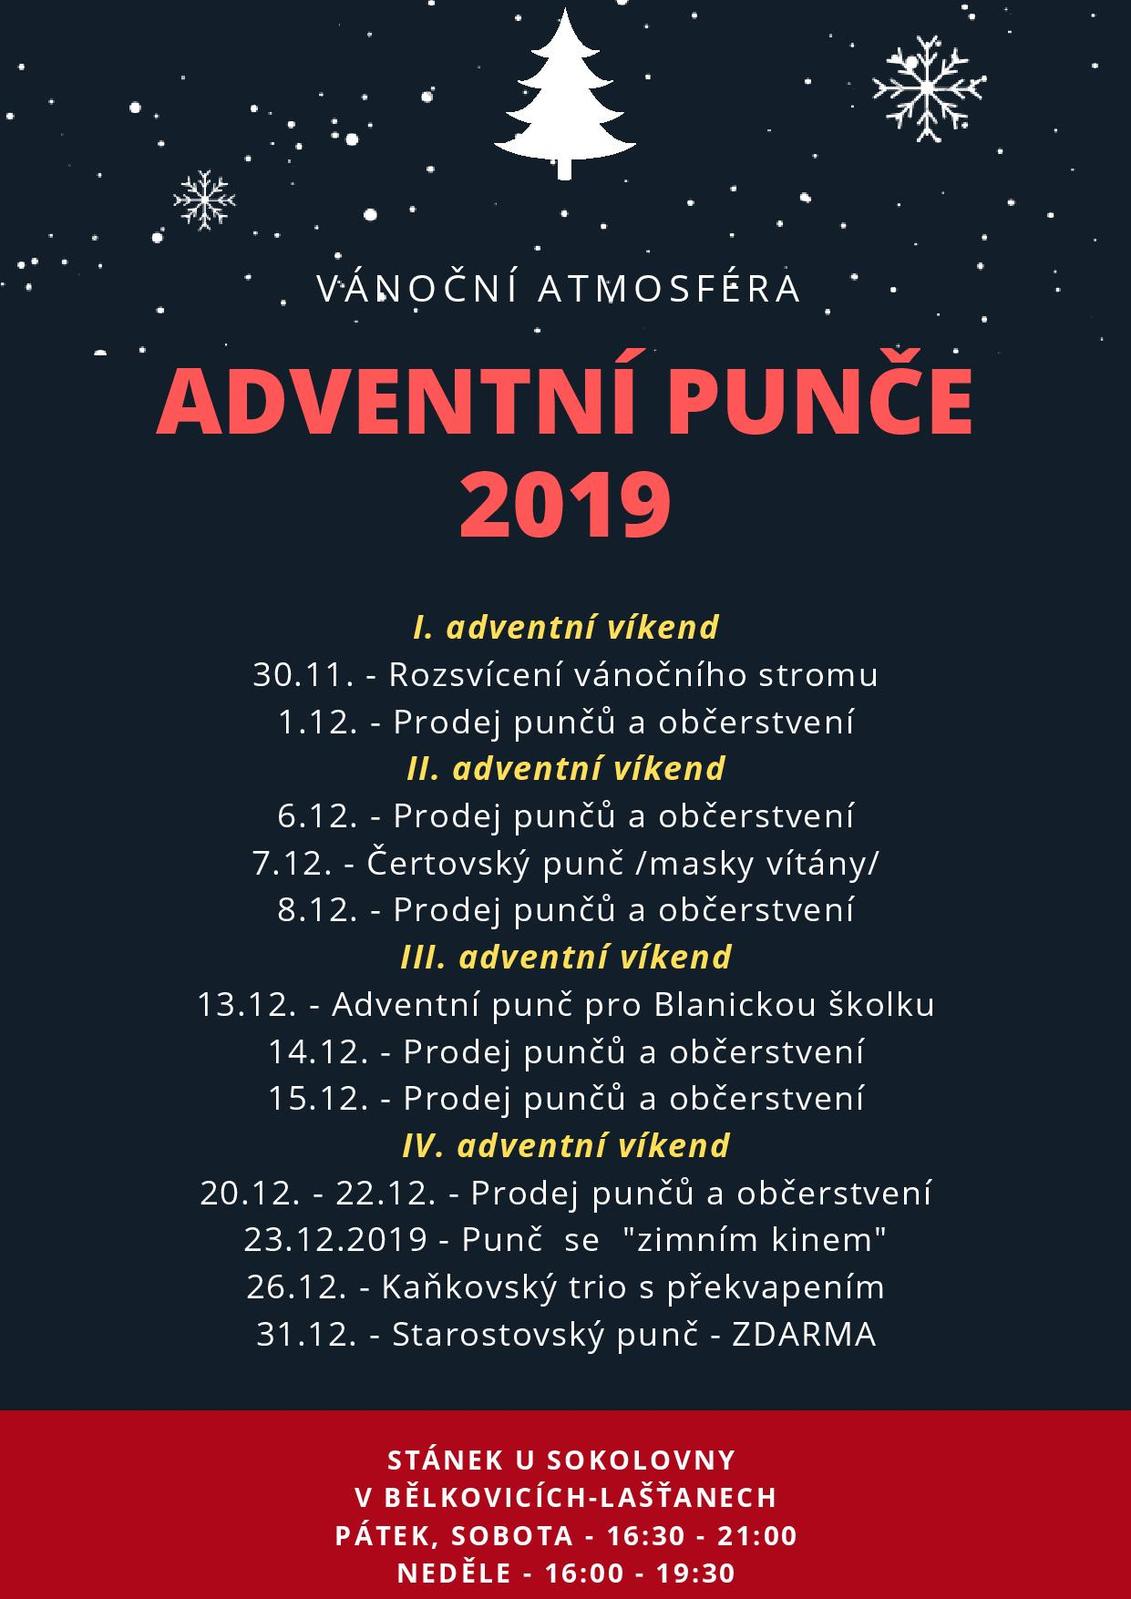 Adventní punče 2019-page-001.jpg